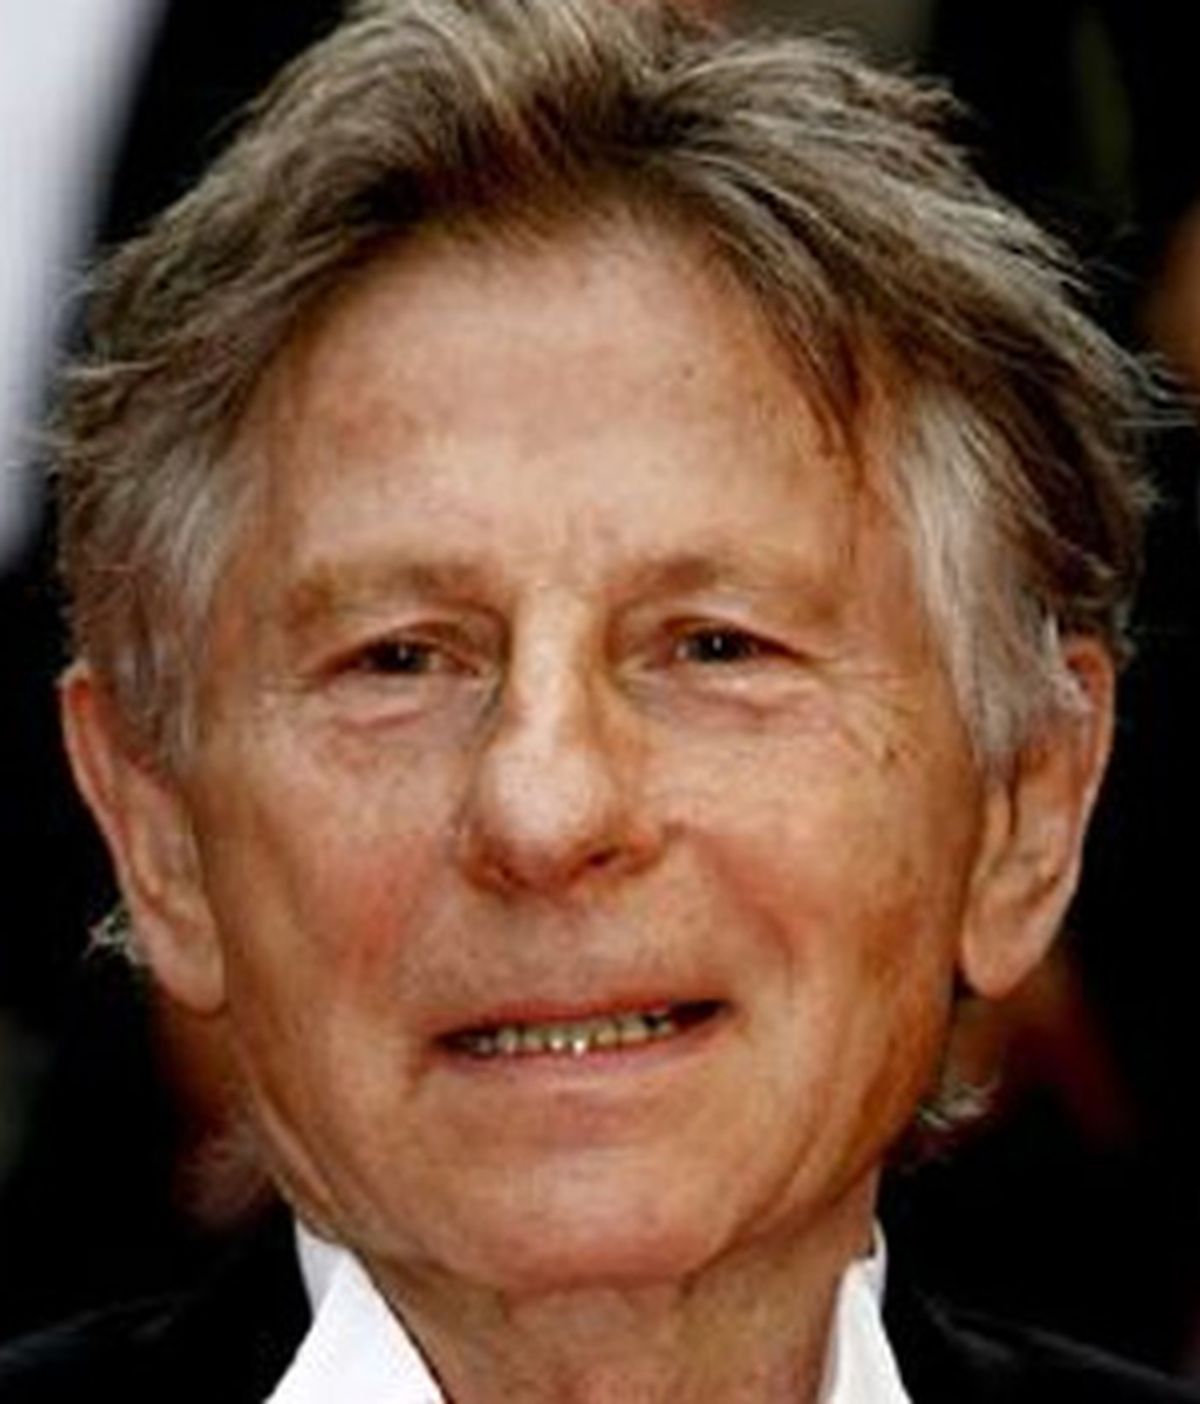 Suiza rechaza extraditar al director Roman Polanski y levanta el arresto domiciliario. Foto archivo EFE